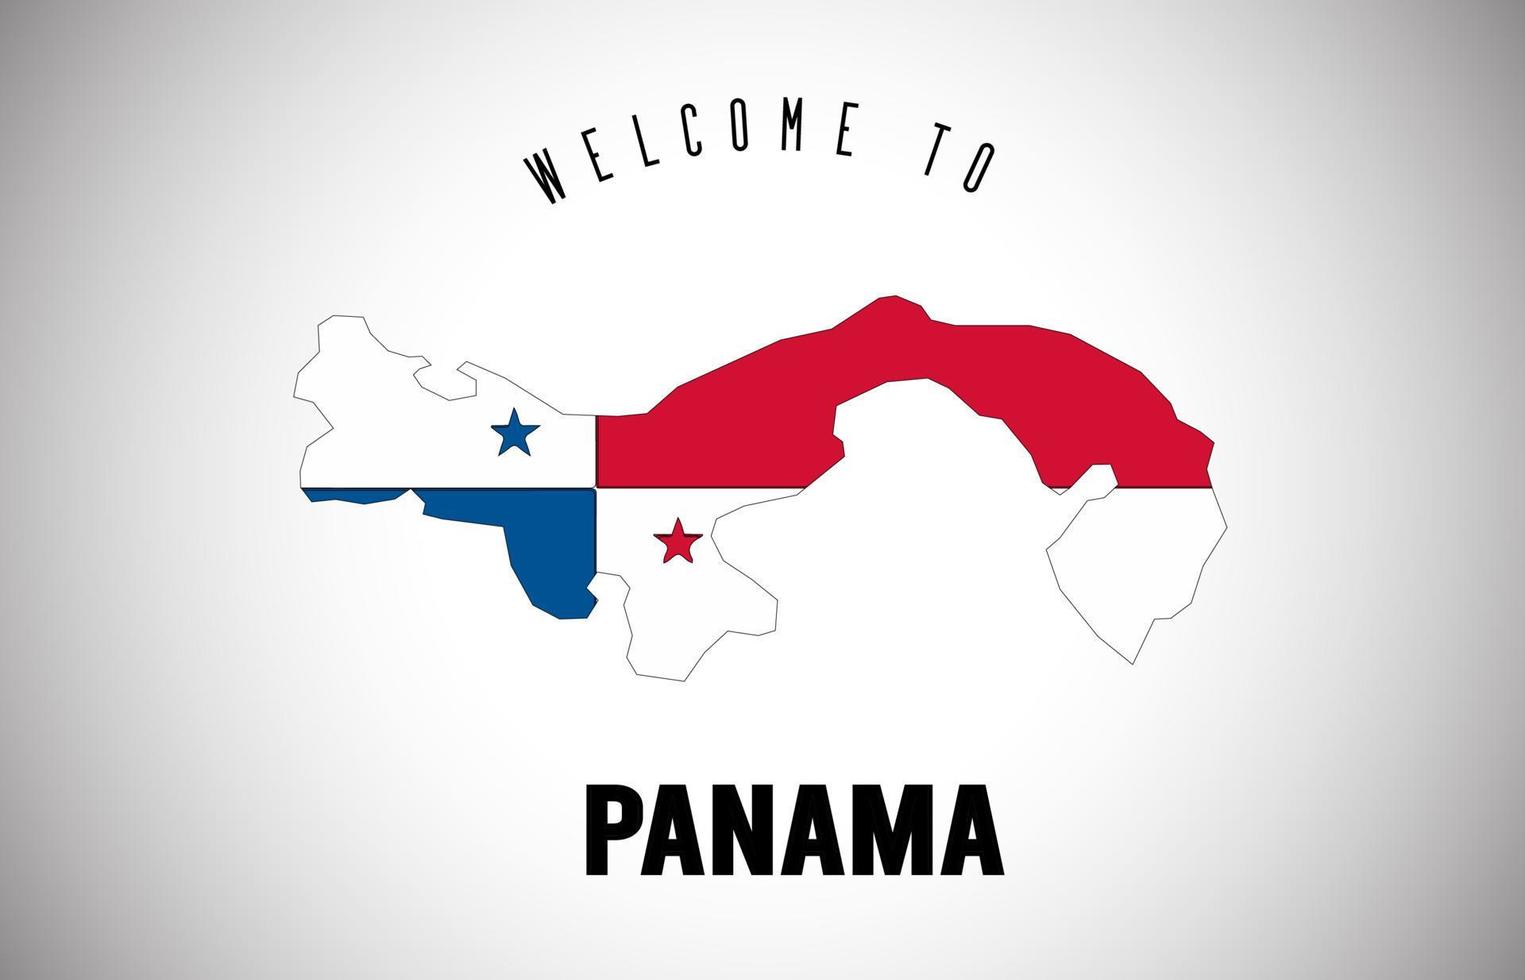 Panama bienvenue au texte et au drapeau du pays à l'intérieur de la conception de vecteur de carte de frontière de pays.